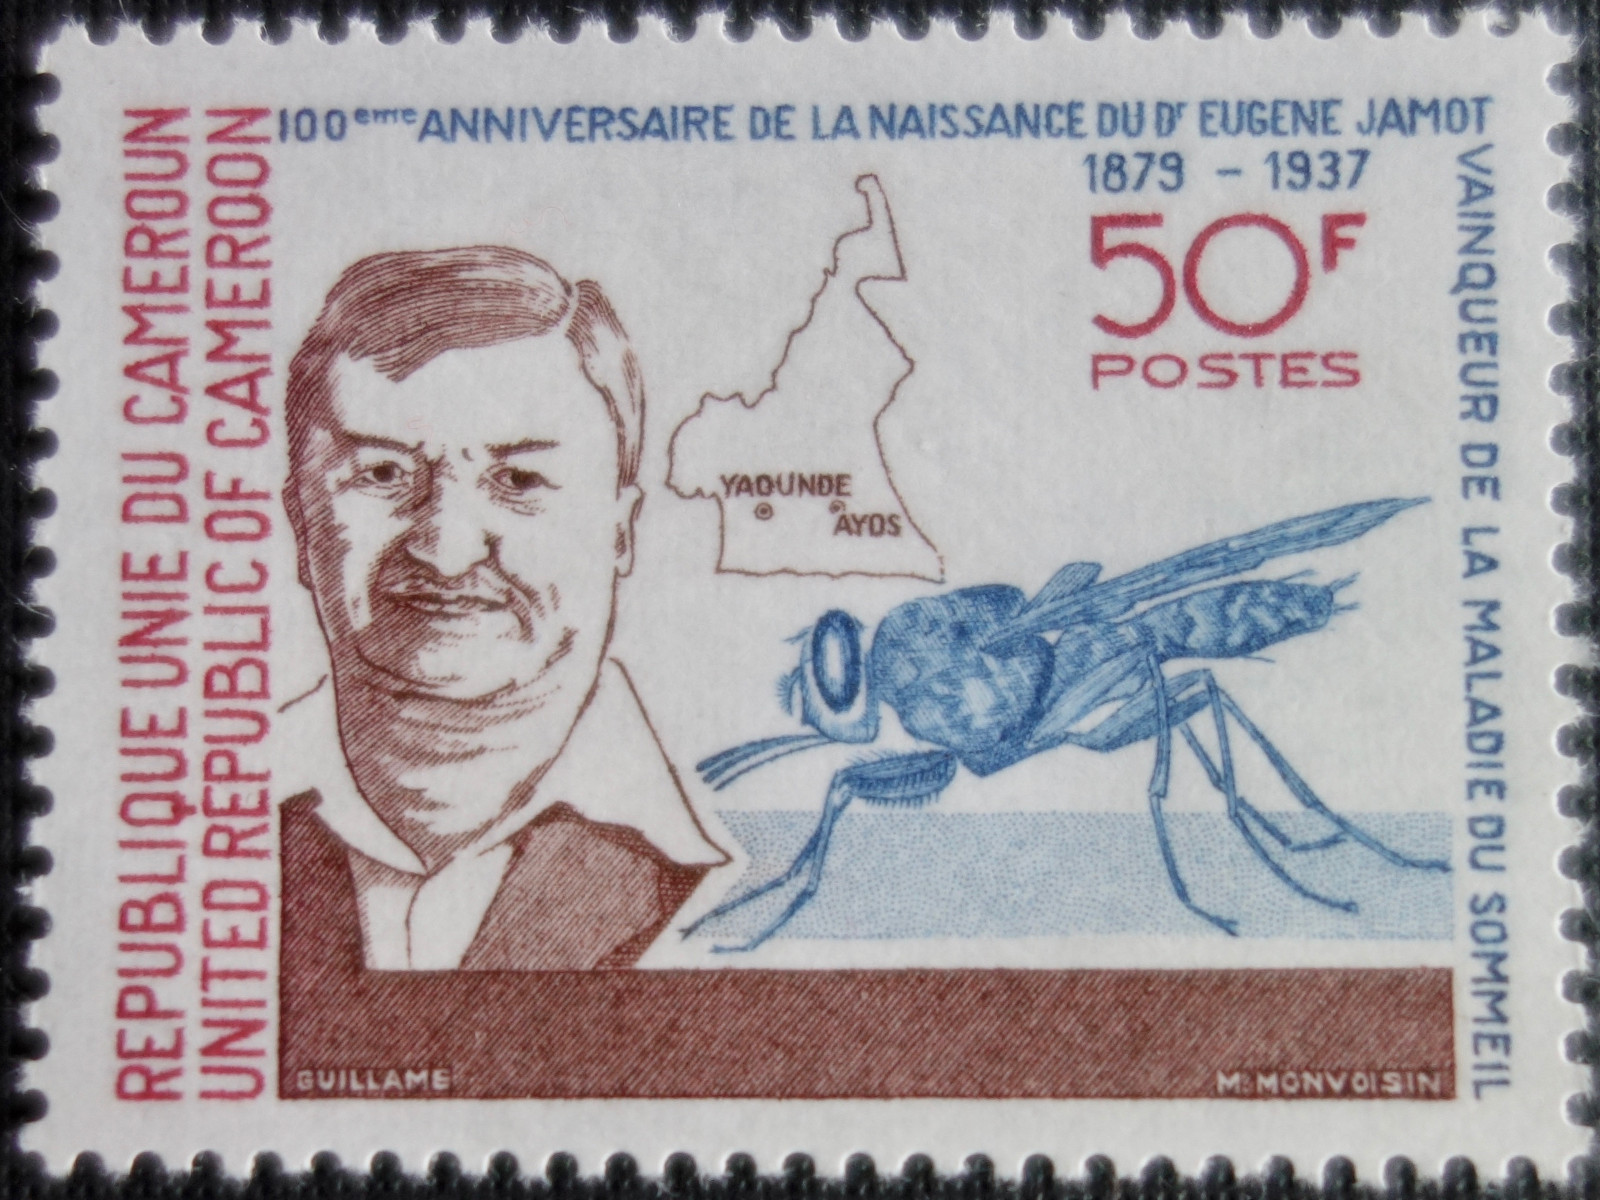 Kamerunische Briefmarke zu Ehren des französischen Arztes Eugène Jamot, 1979